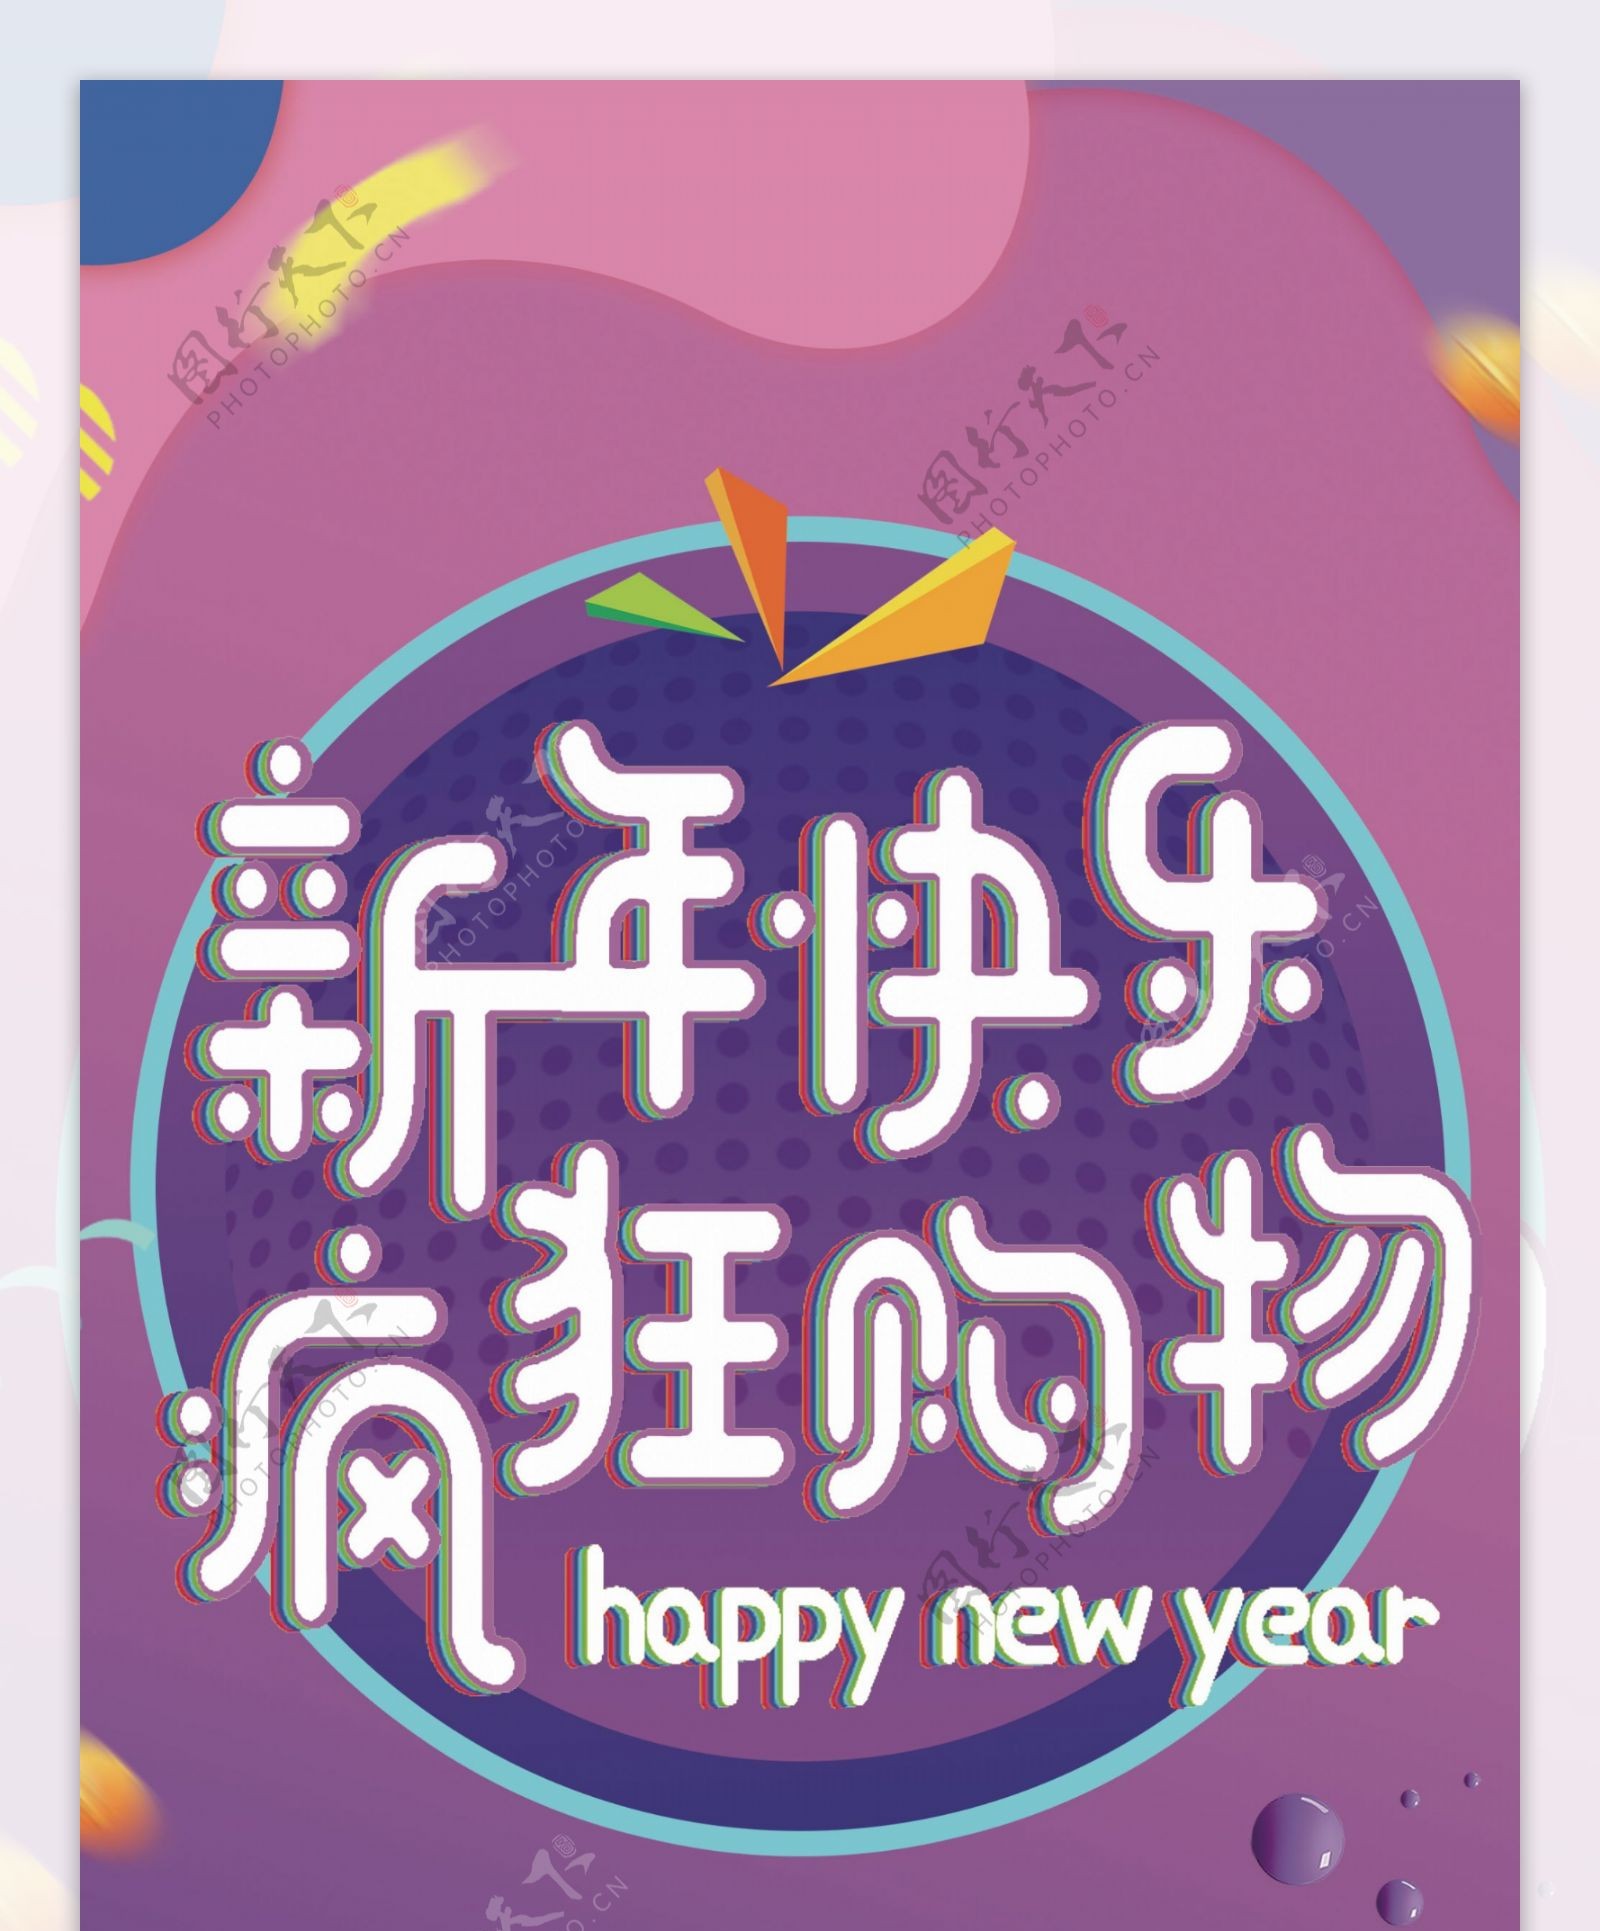 蓝紫色新年快乐购物促销展架设计PSD模板